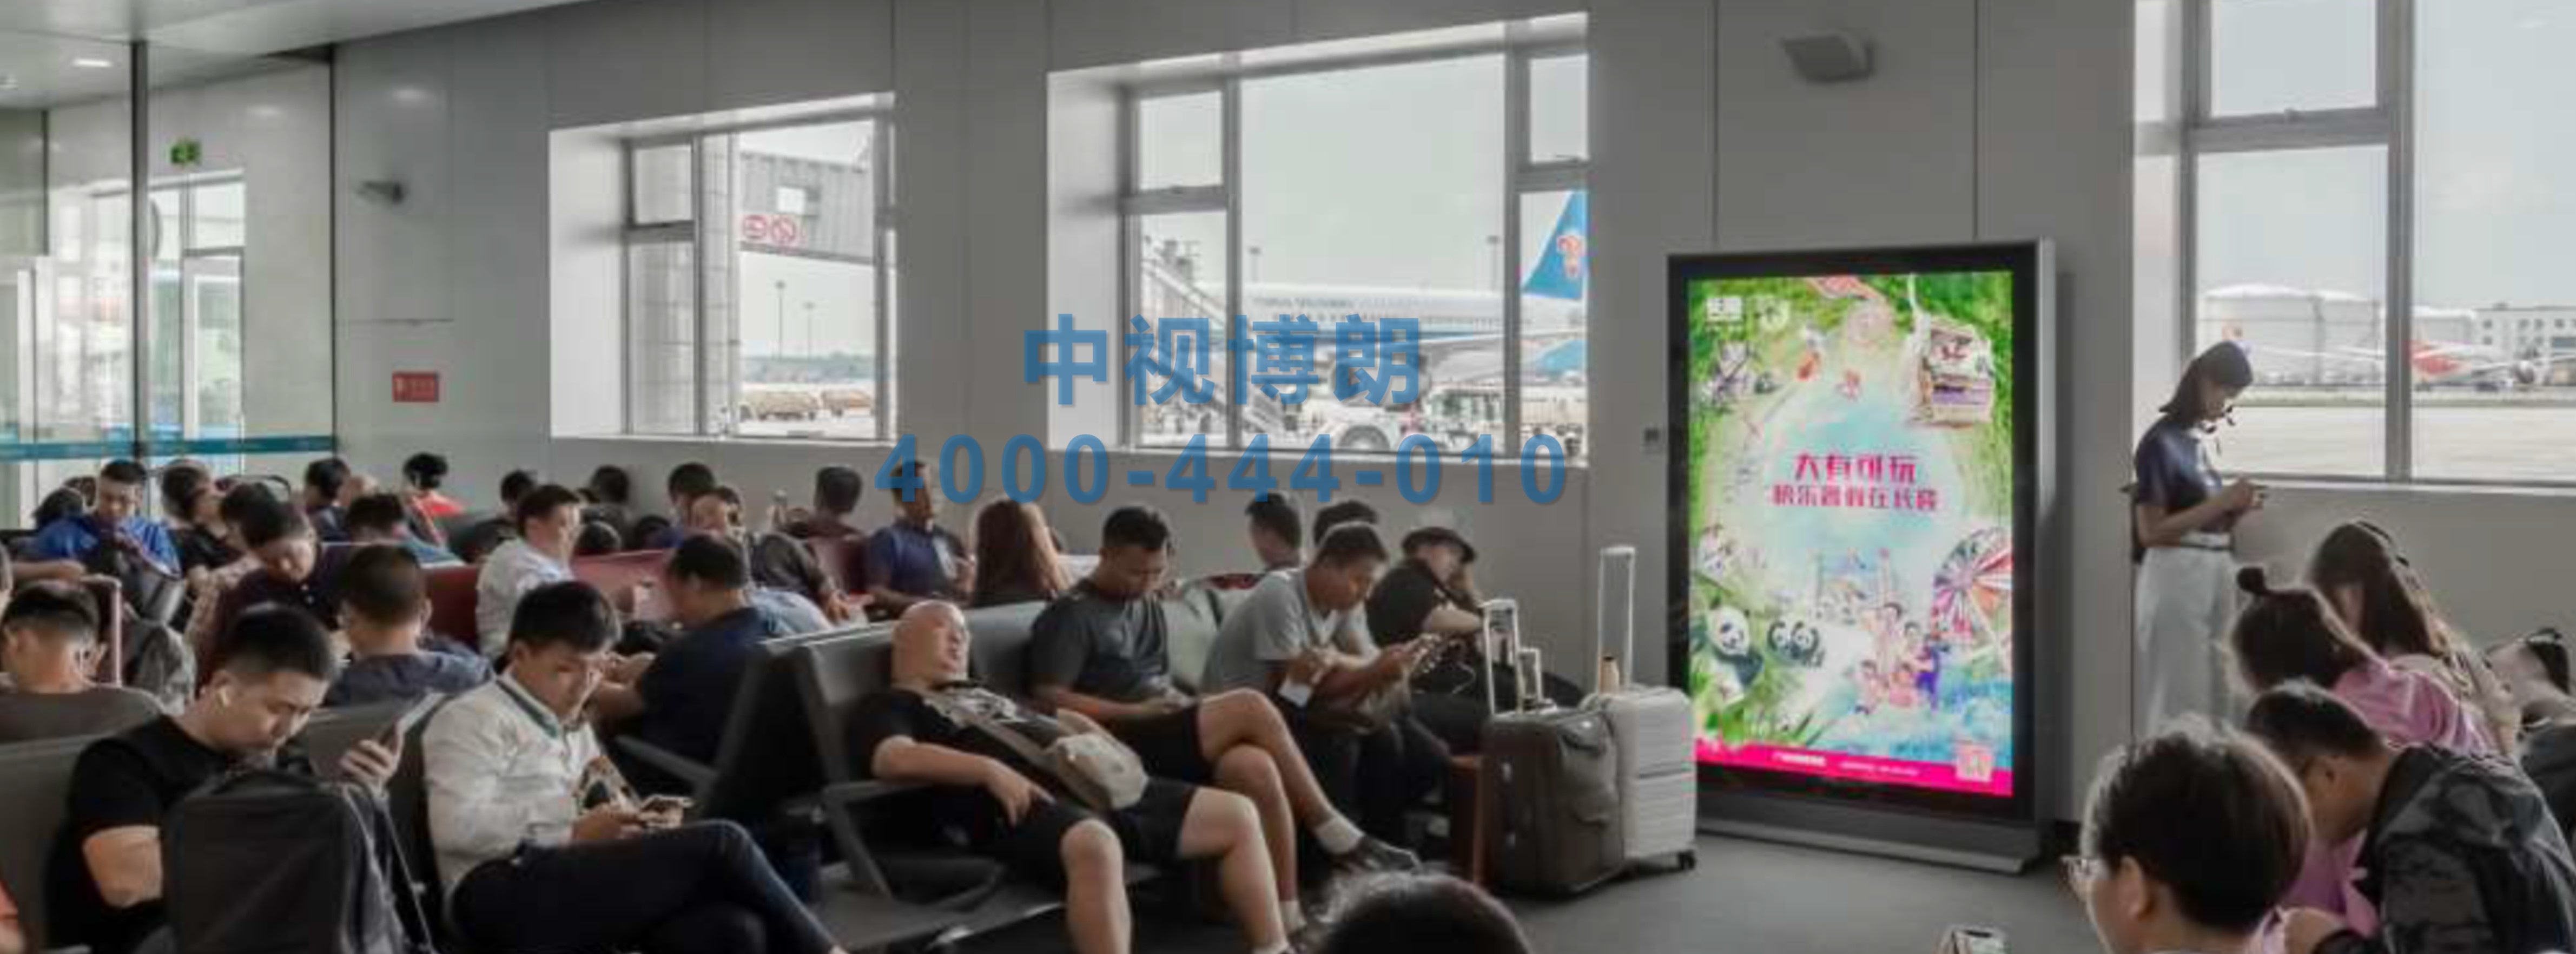 北京首都机场广告-T2 Domestic Departure Waiting Area Rolling Light Box 01